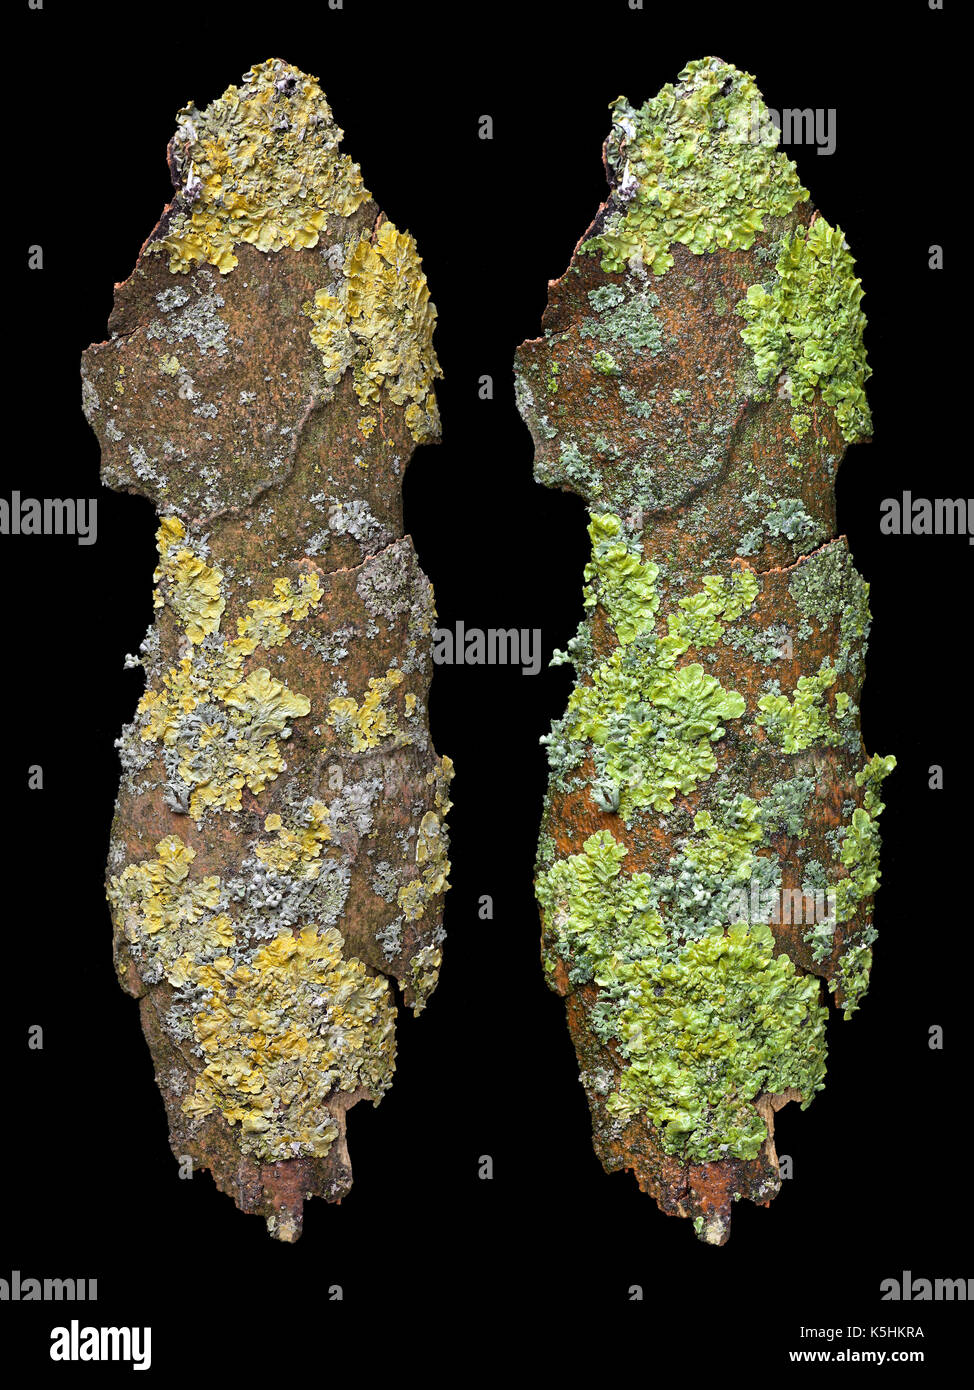 Confronto analitico di lichen appearence; secco (sinistra) imge wet (a destra) Il contrasto dei colori e tonalità cambia notevolmente. Foto Stock